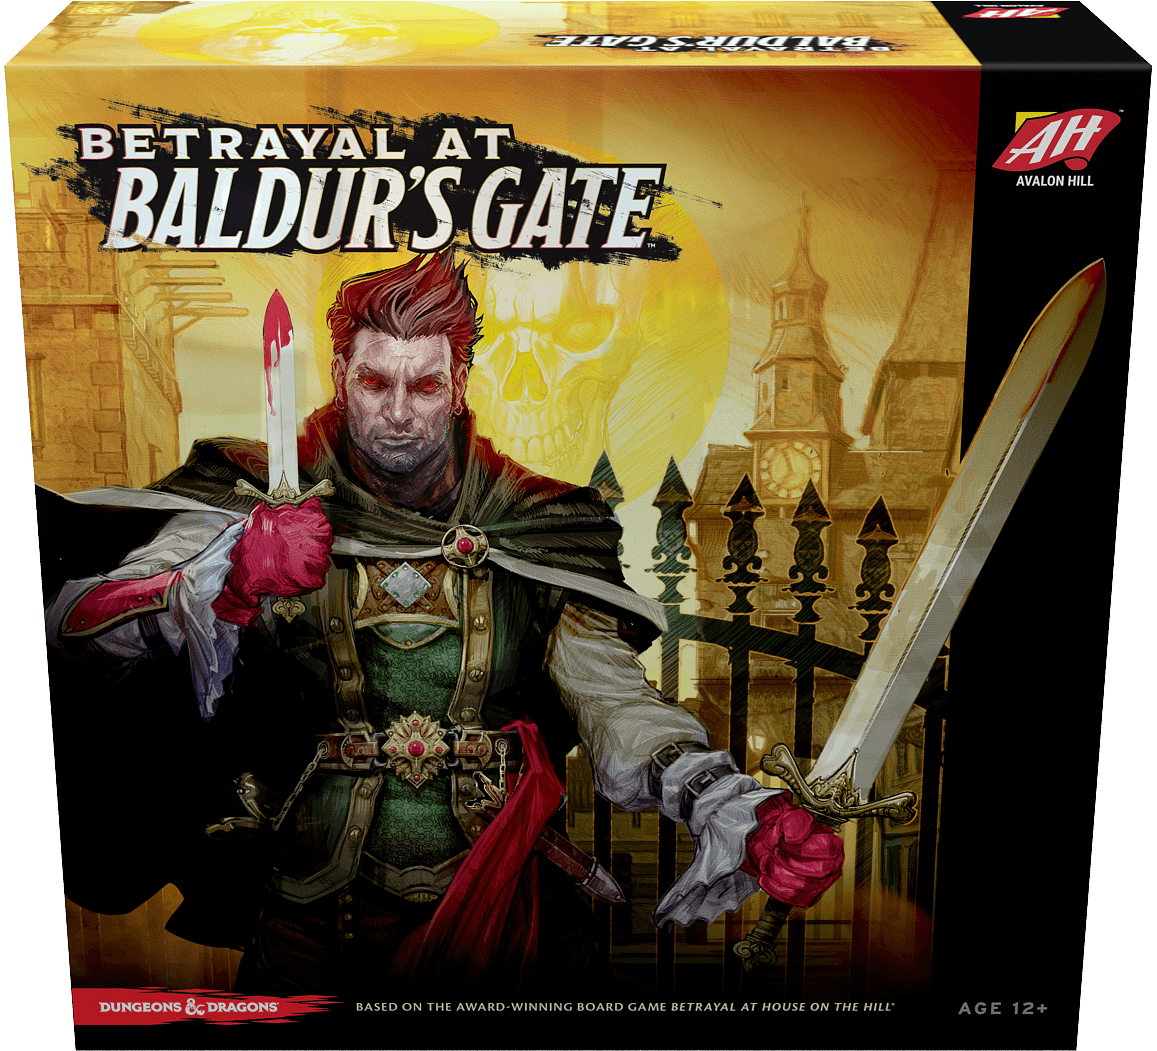 Förråd vid Baldur's Gate (Retail Edition) detaljhandelsspel Avalon Hill Games KS800547A